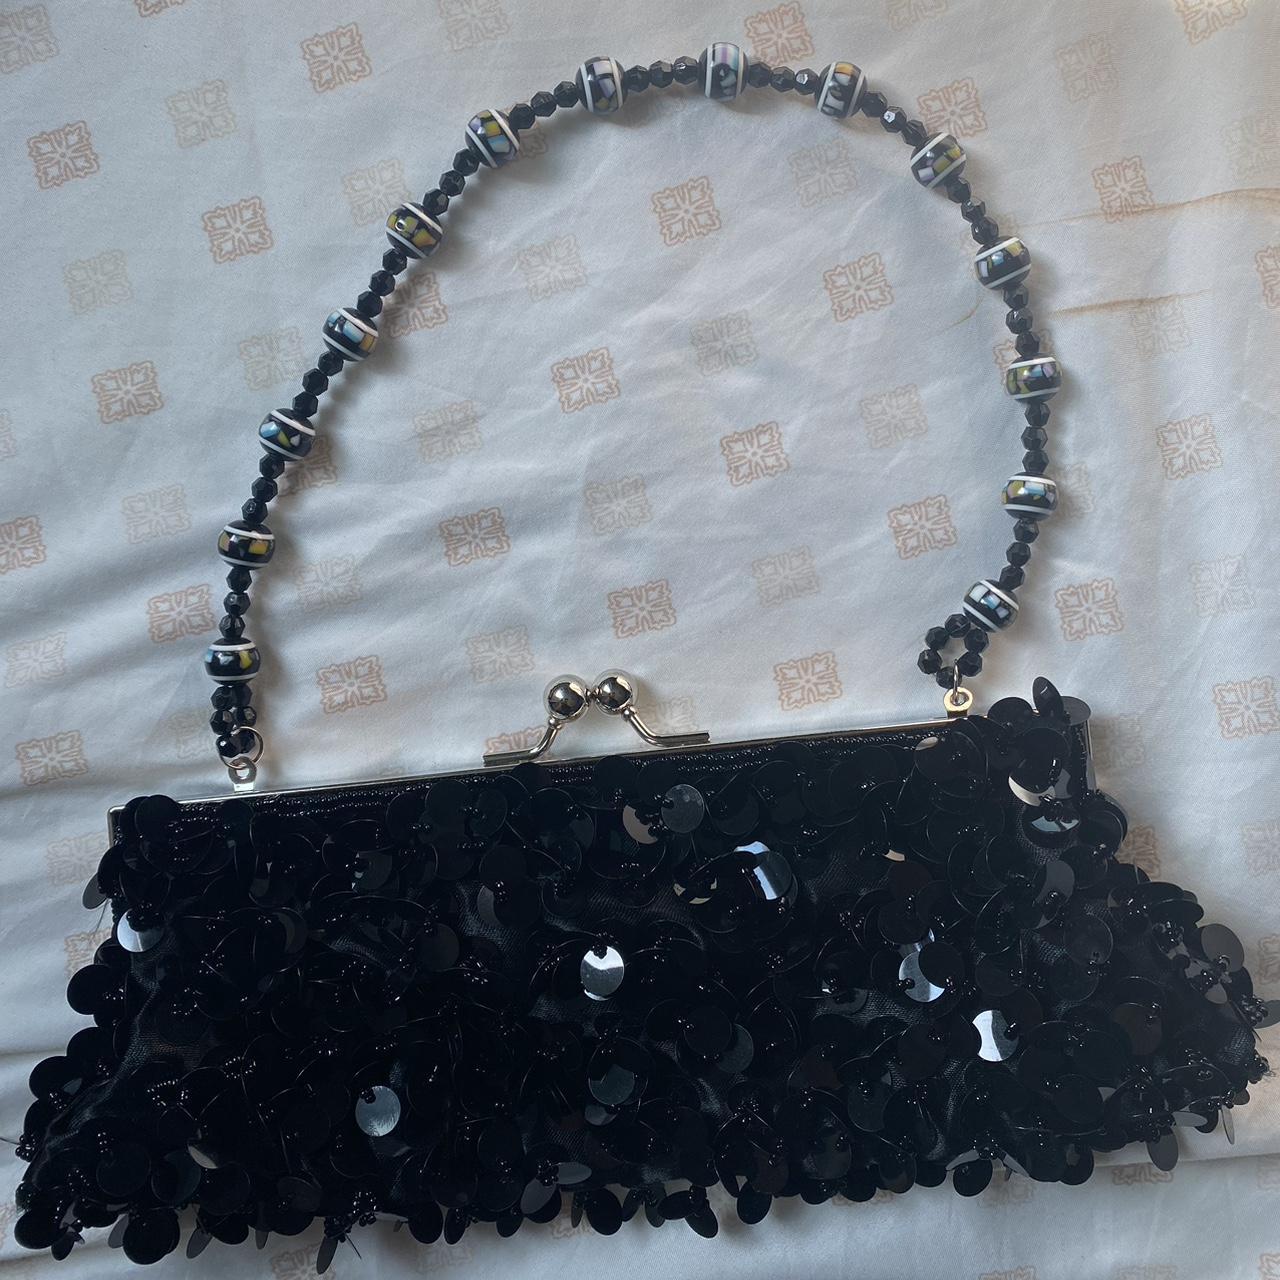 Black textured clutch handbag by “Bijoux Terner”.... - Depop